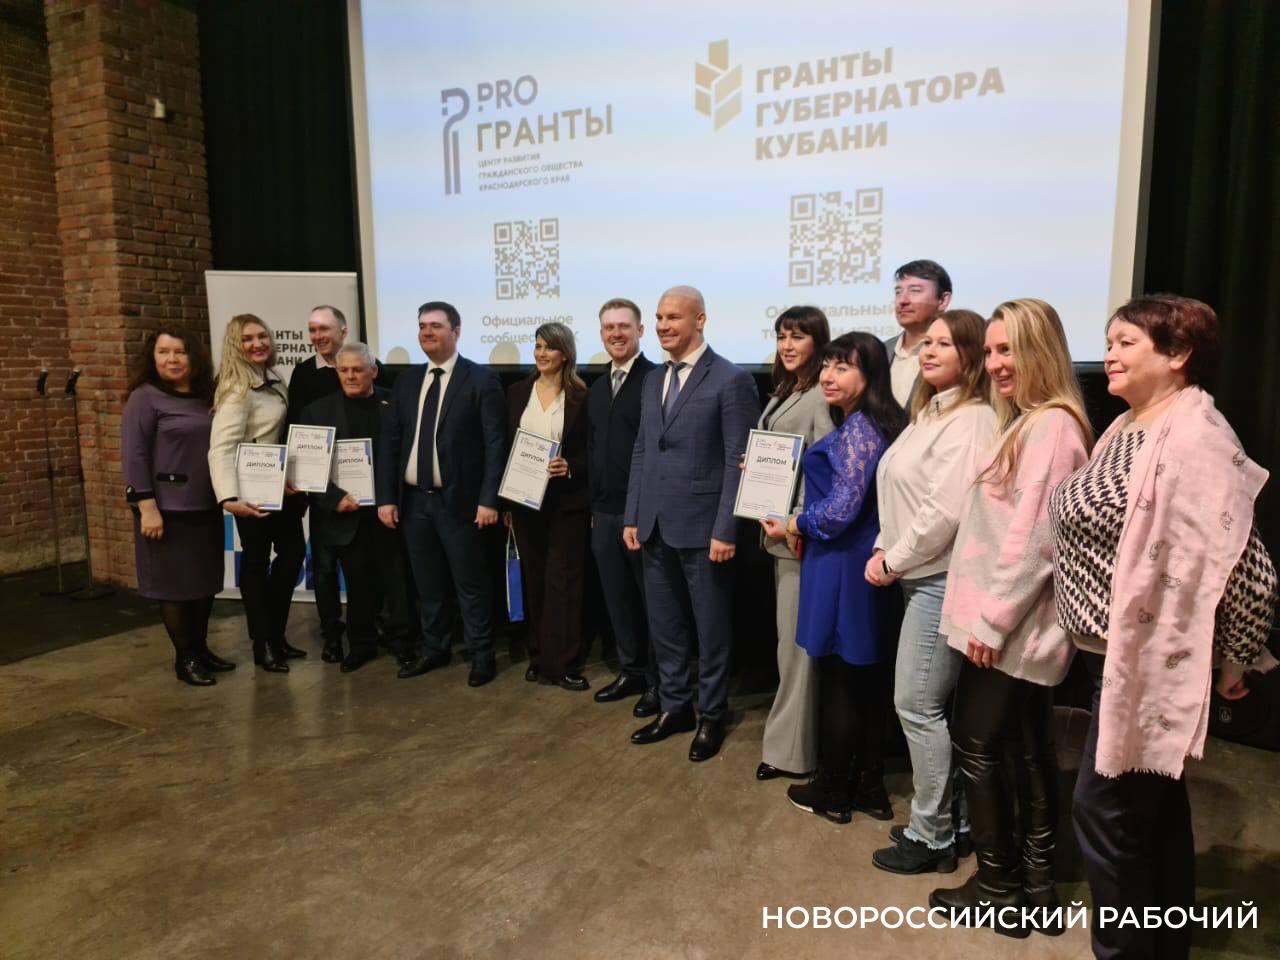 Общественники Новороссийска за год выиграли грантов на 61 млн. рублей. Это рекорд!